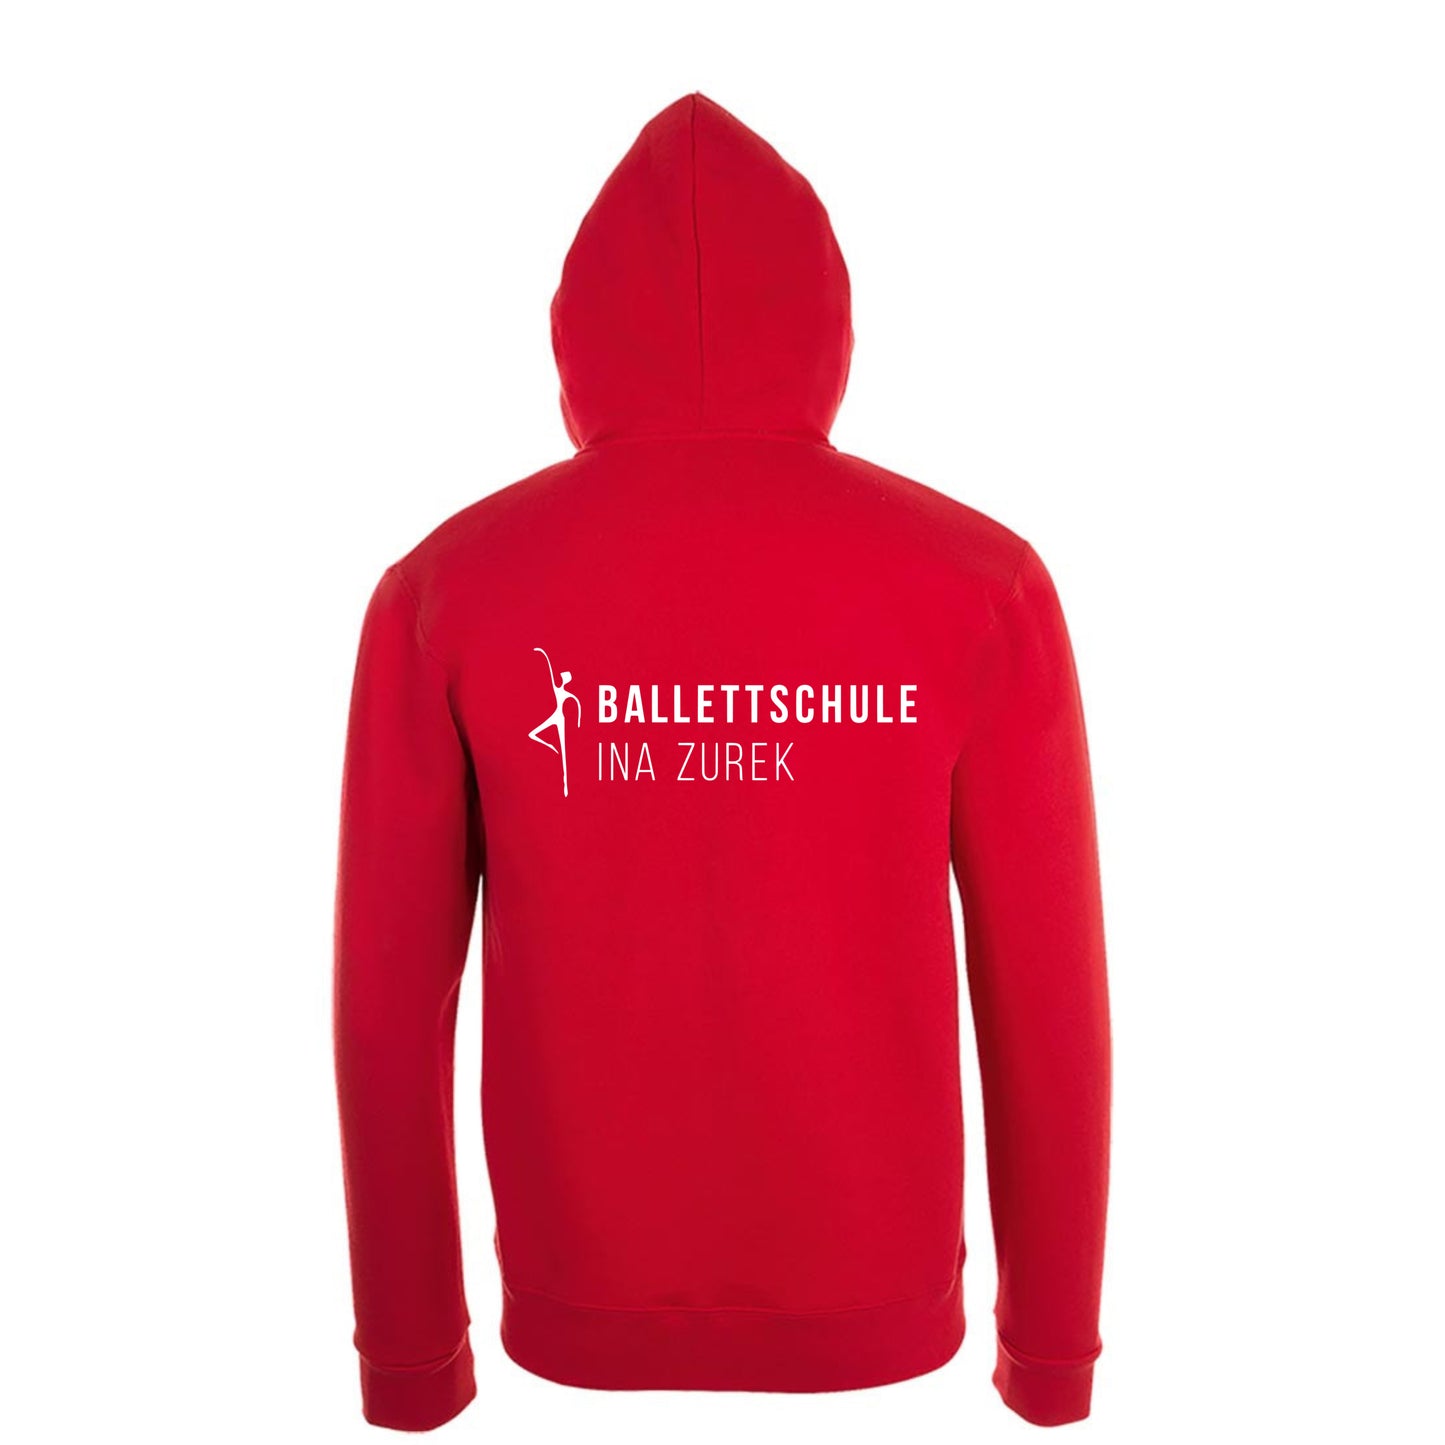 Sweatshirt-Jacke Kids "Ballettschule" rot mit weißem Druck